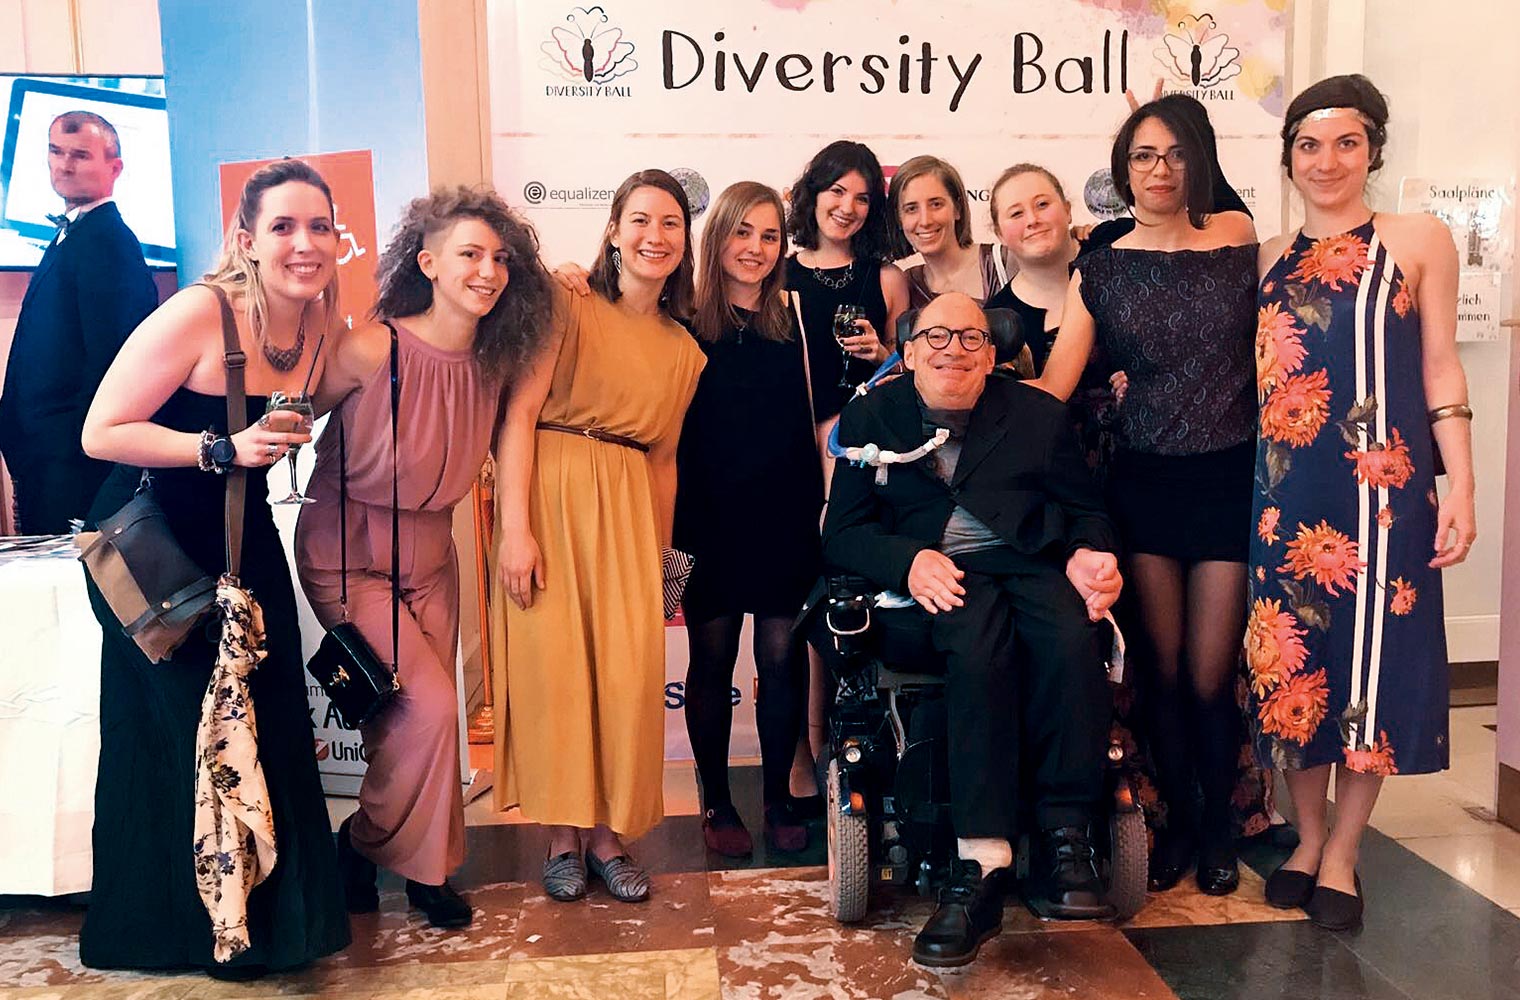 Franz-Joseph Huainigg sitzt festlich gekleidet lächelnd in seinem Rollstuhl umgeben von Assistentinnen. Dahinter steht ein Plakat zum Diversity Ball.